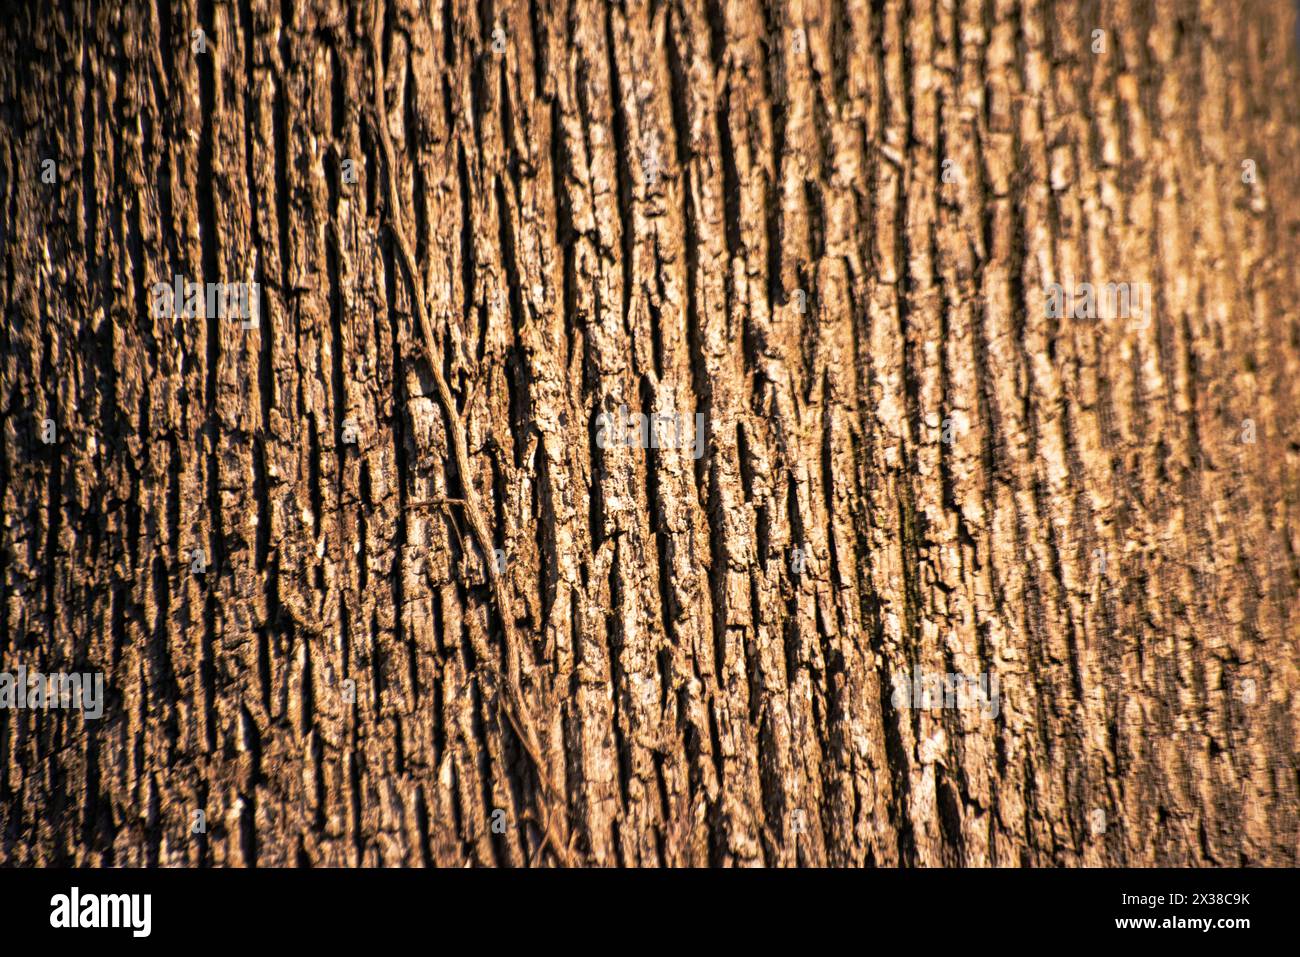 Una vista ravvicinata che rivela i dettagli e le texture intricati di un tronco di albero maestoso, catturando la bellezza della natura da vicino. Foto Stock